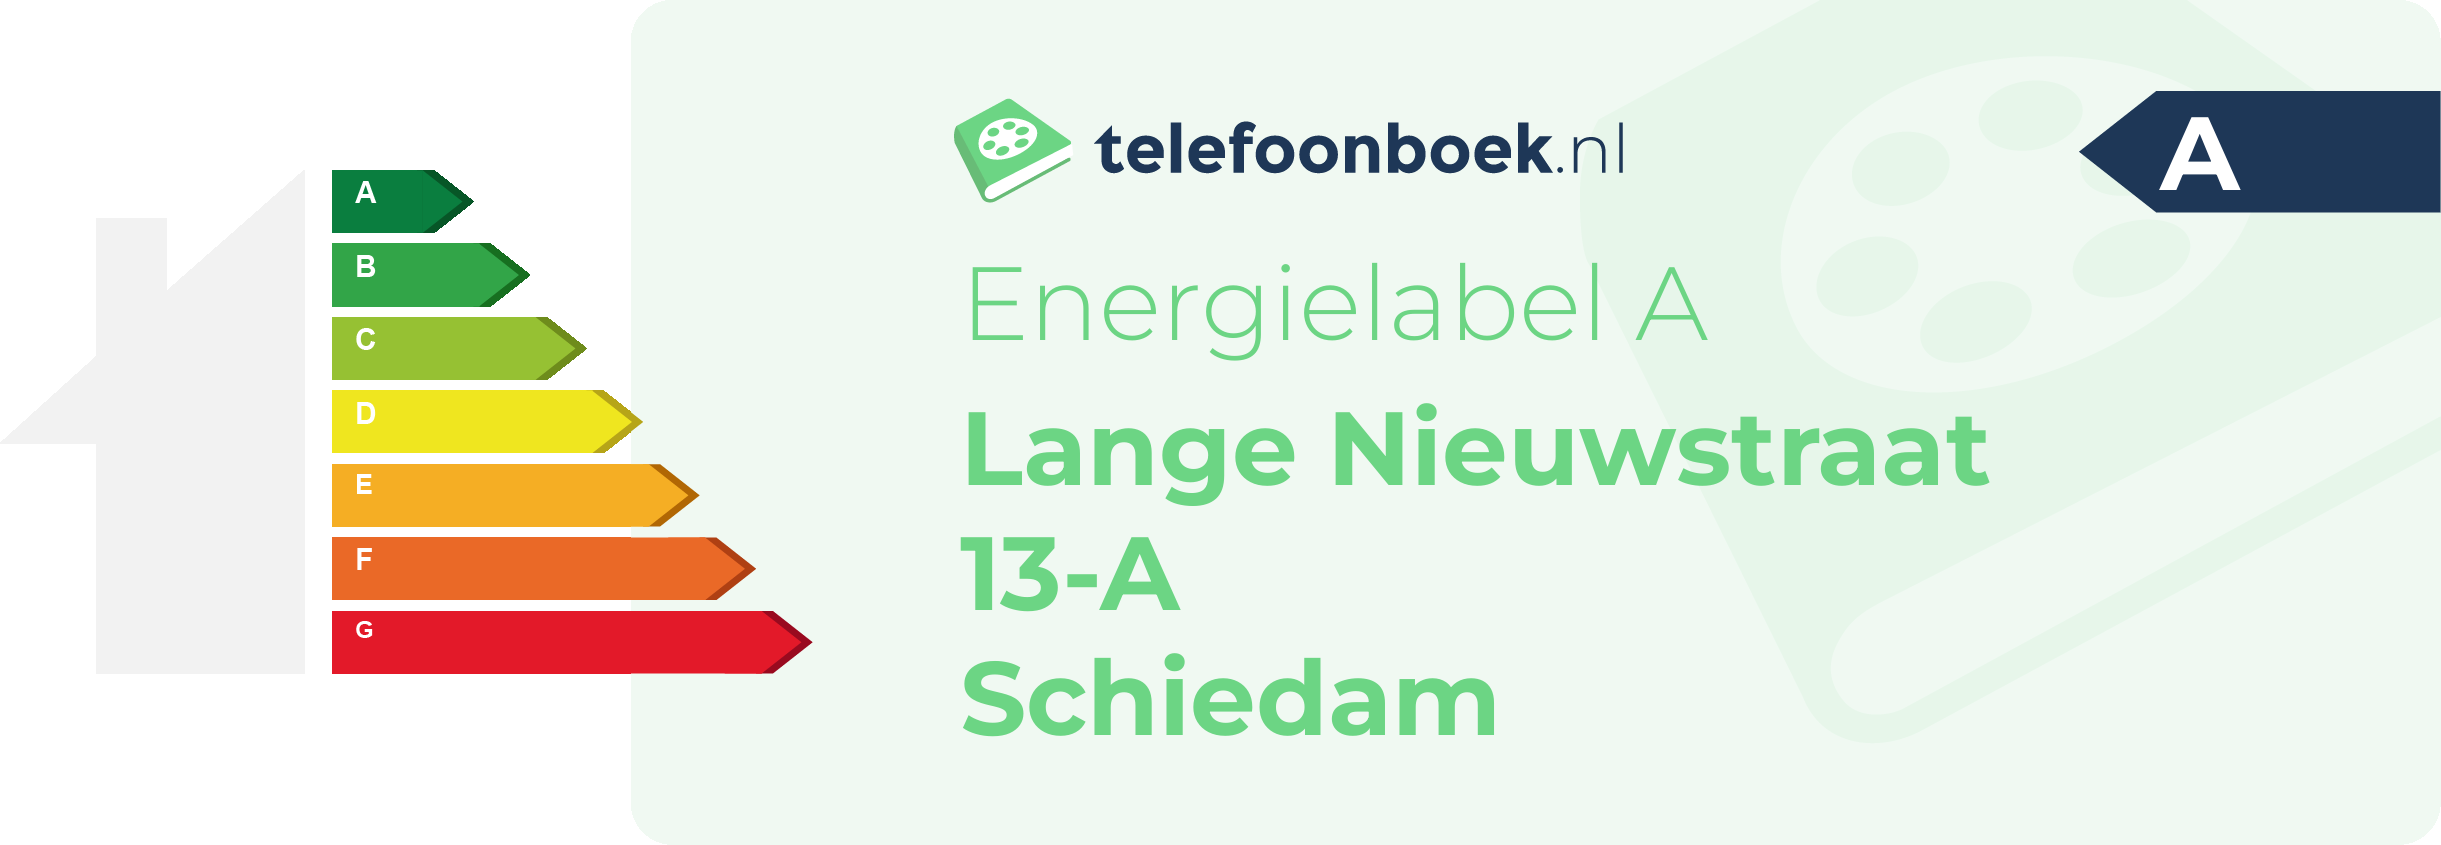 Energielabel Lange Nieuwstraat 13-A Schiedam